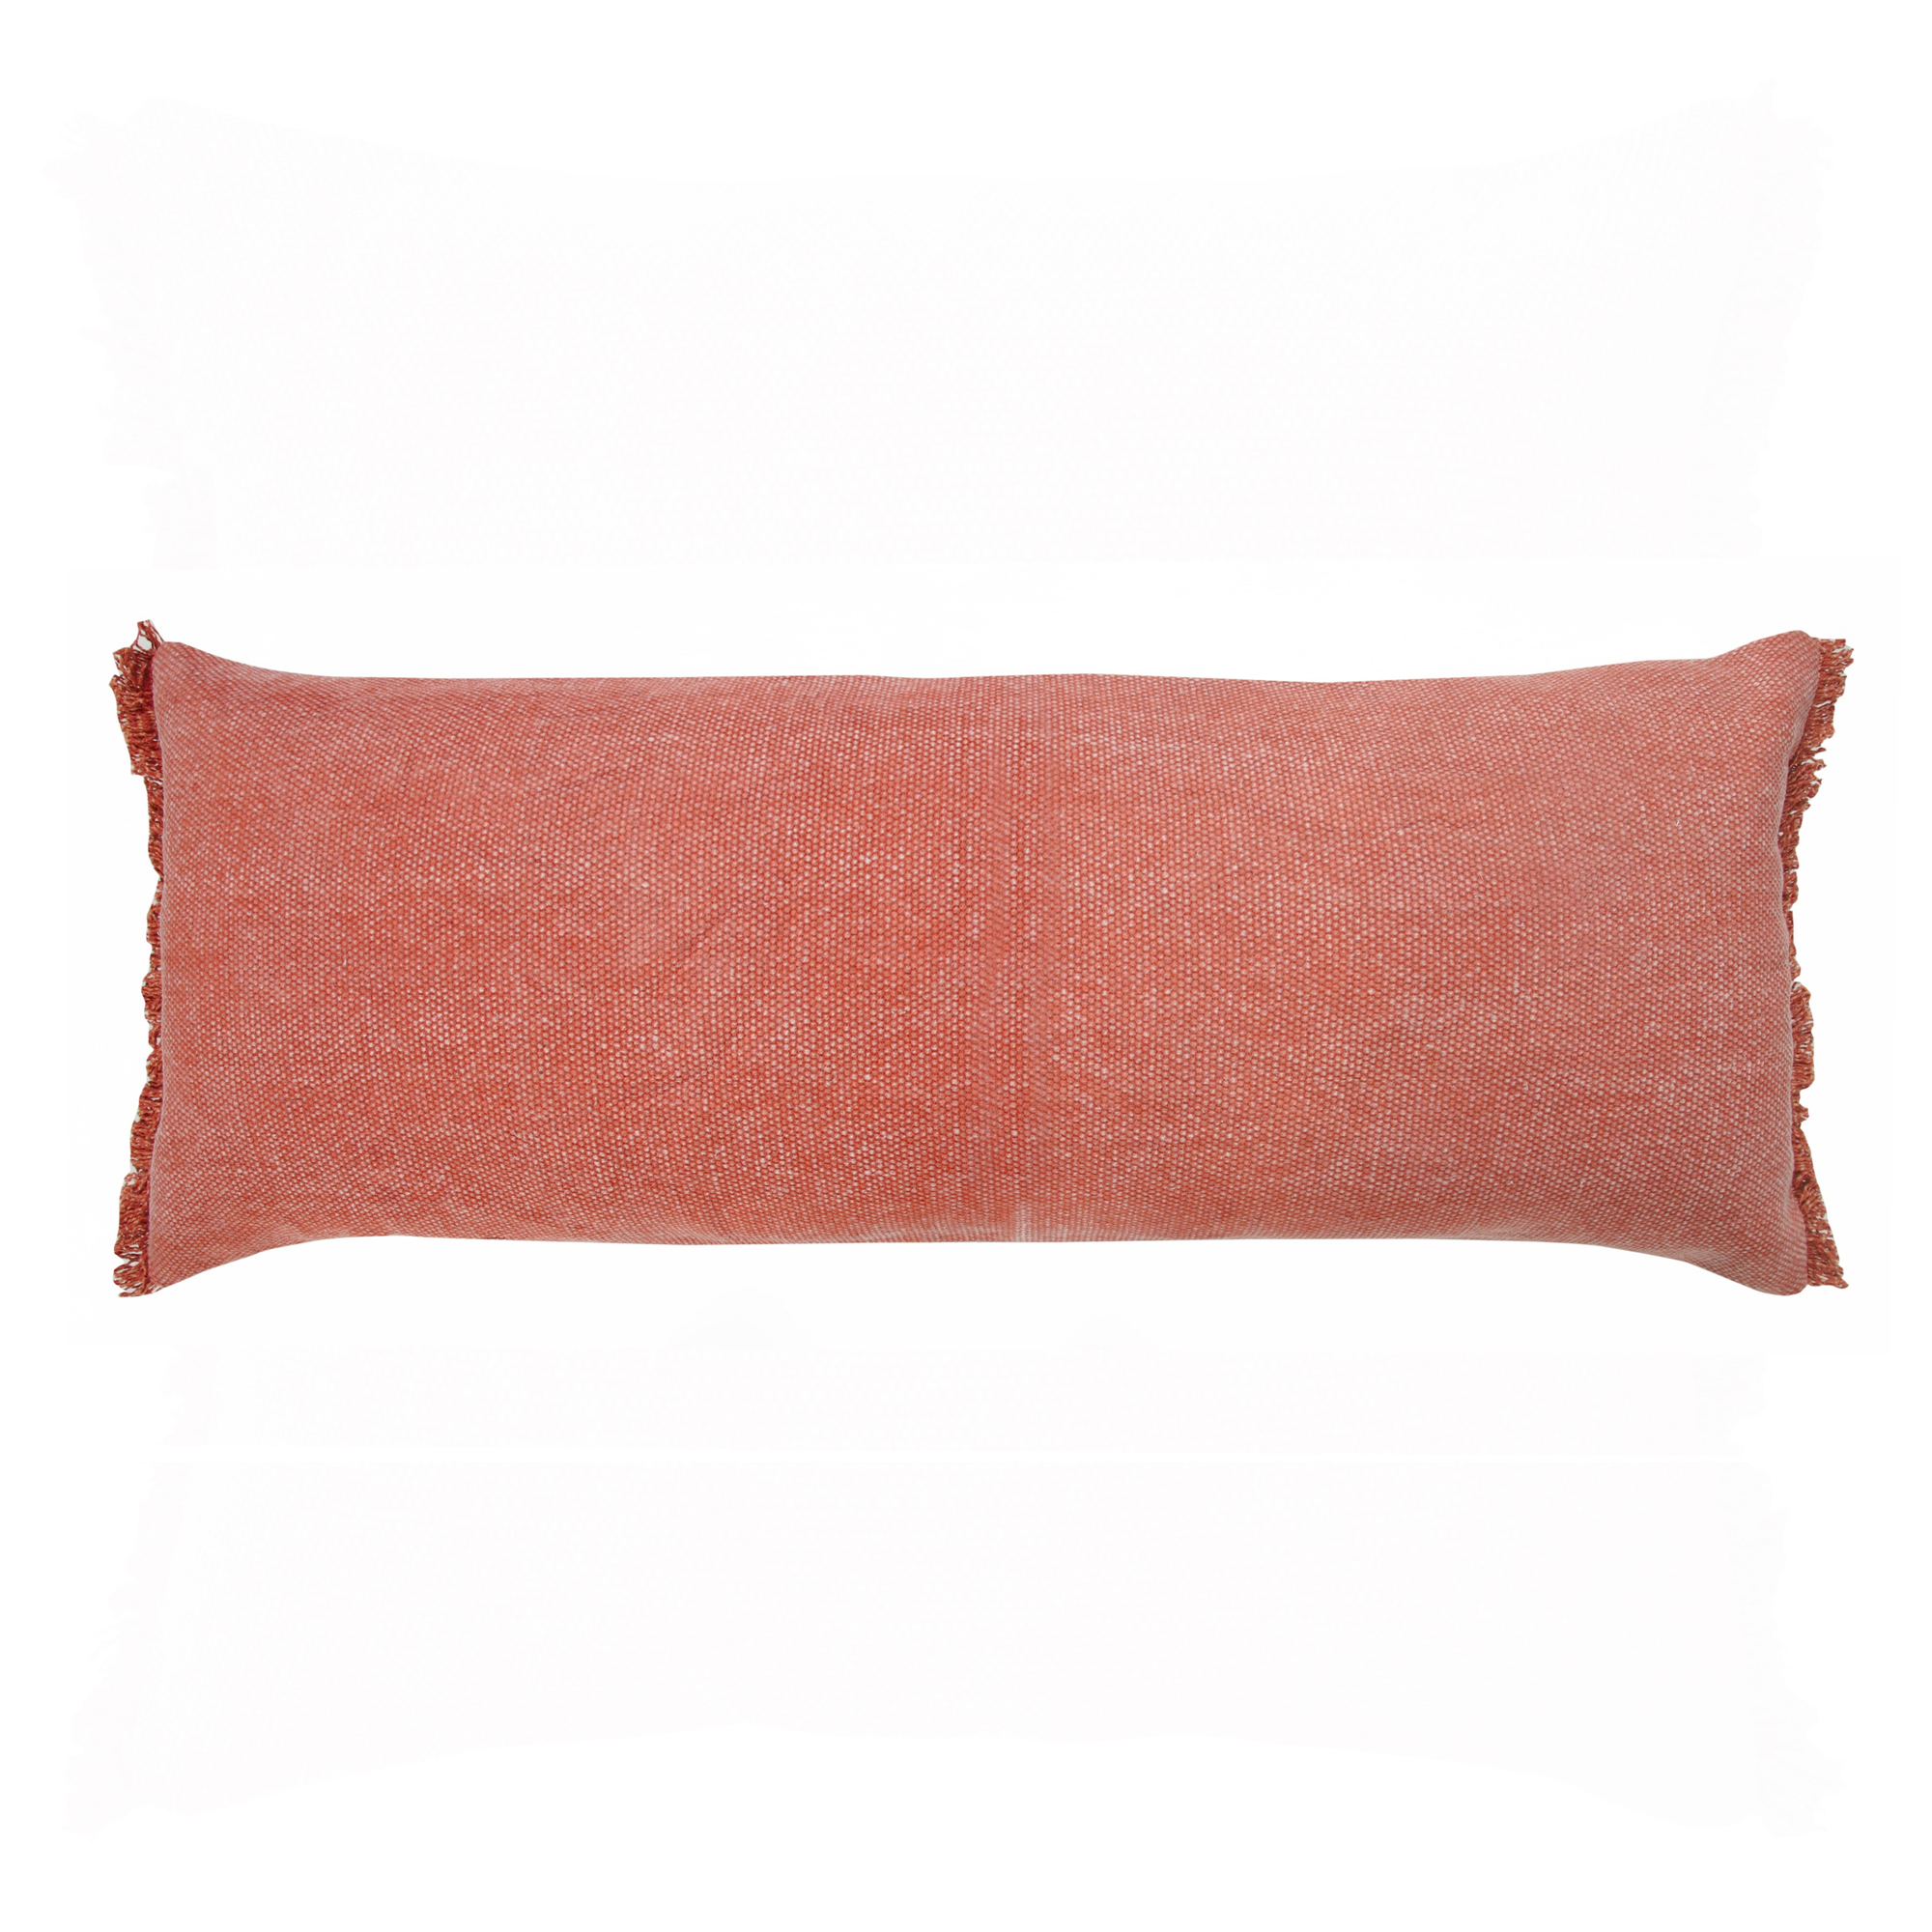 14" X 36" Rose Pink 100% Cotton Zippered Pillow-517340-1